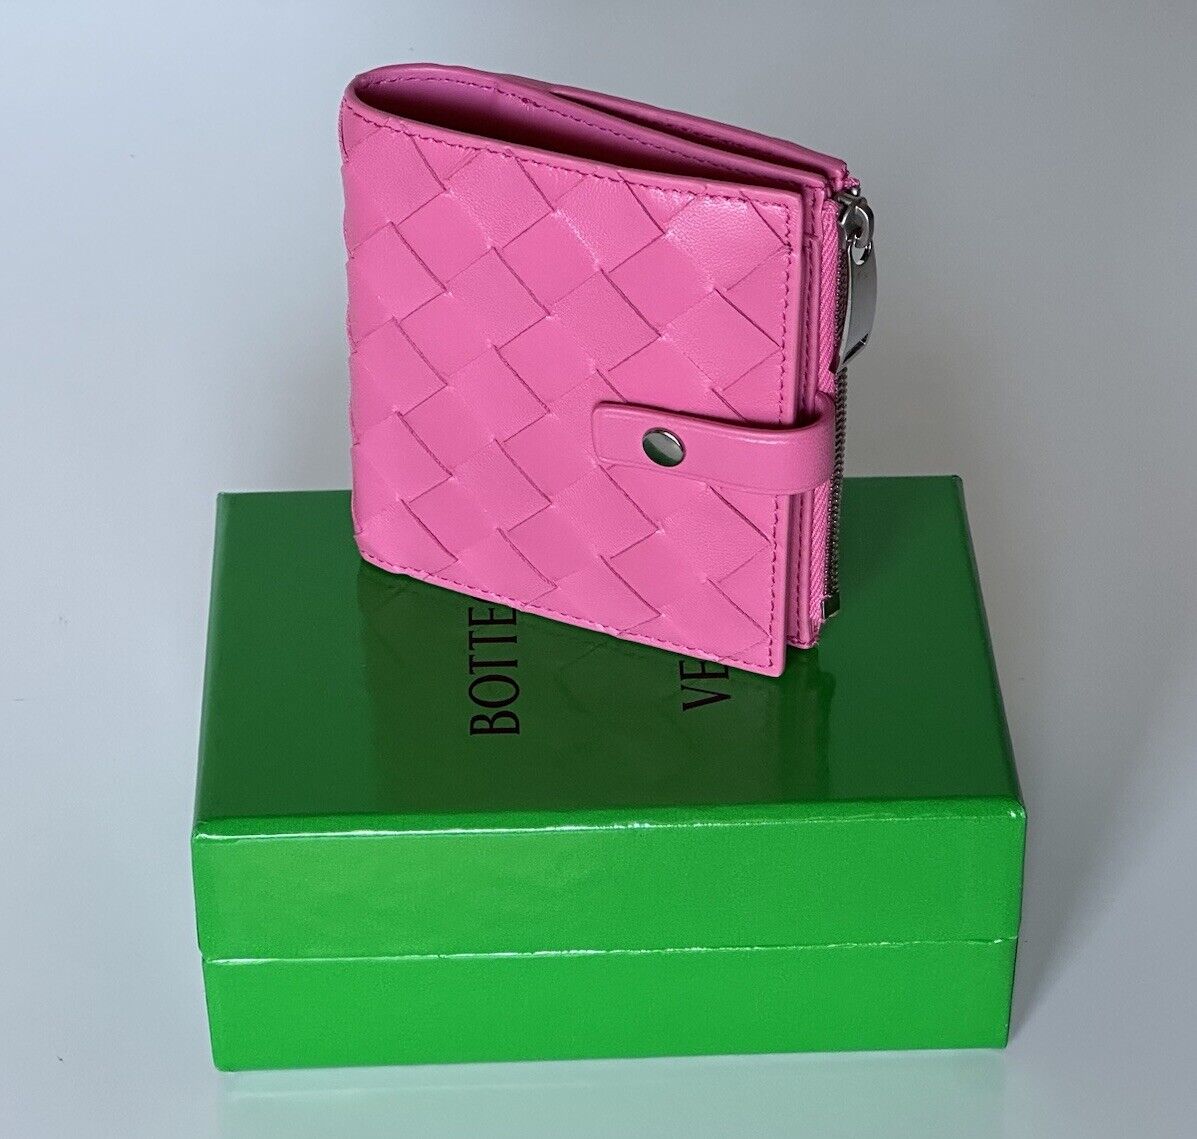 NWT $630 Bottega Veneta Intrecciato Napa Кожаный кошелек на молнии Розовый IT 600270 